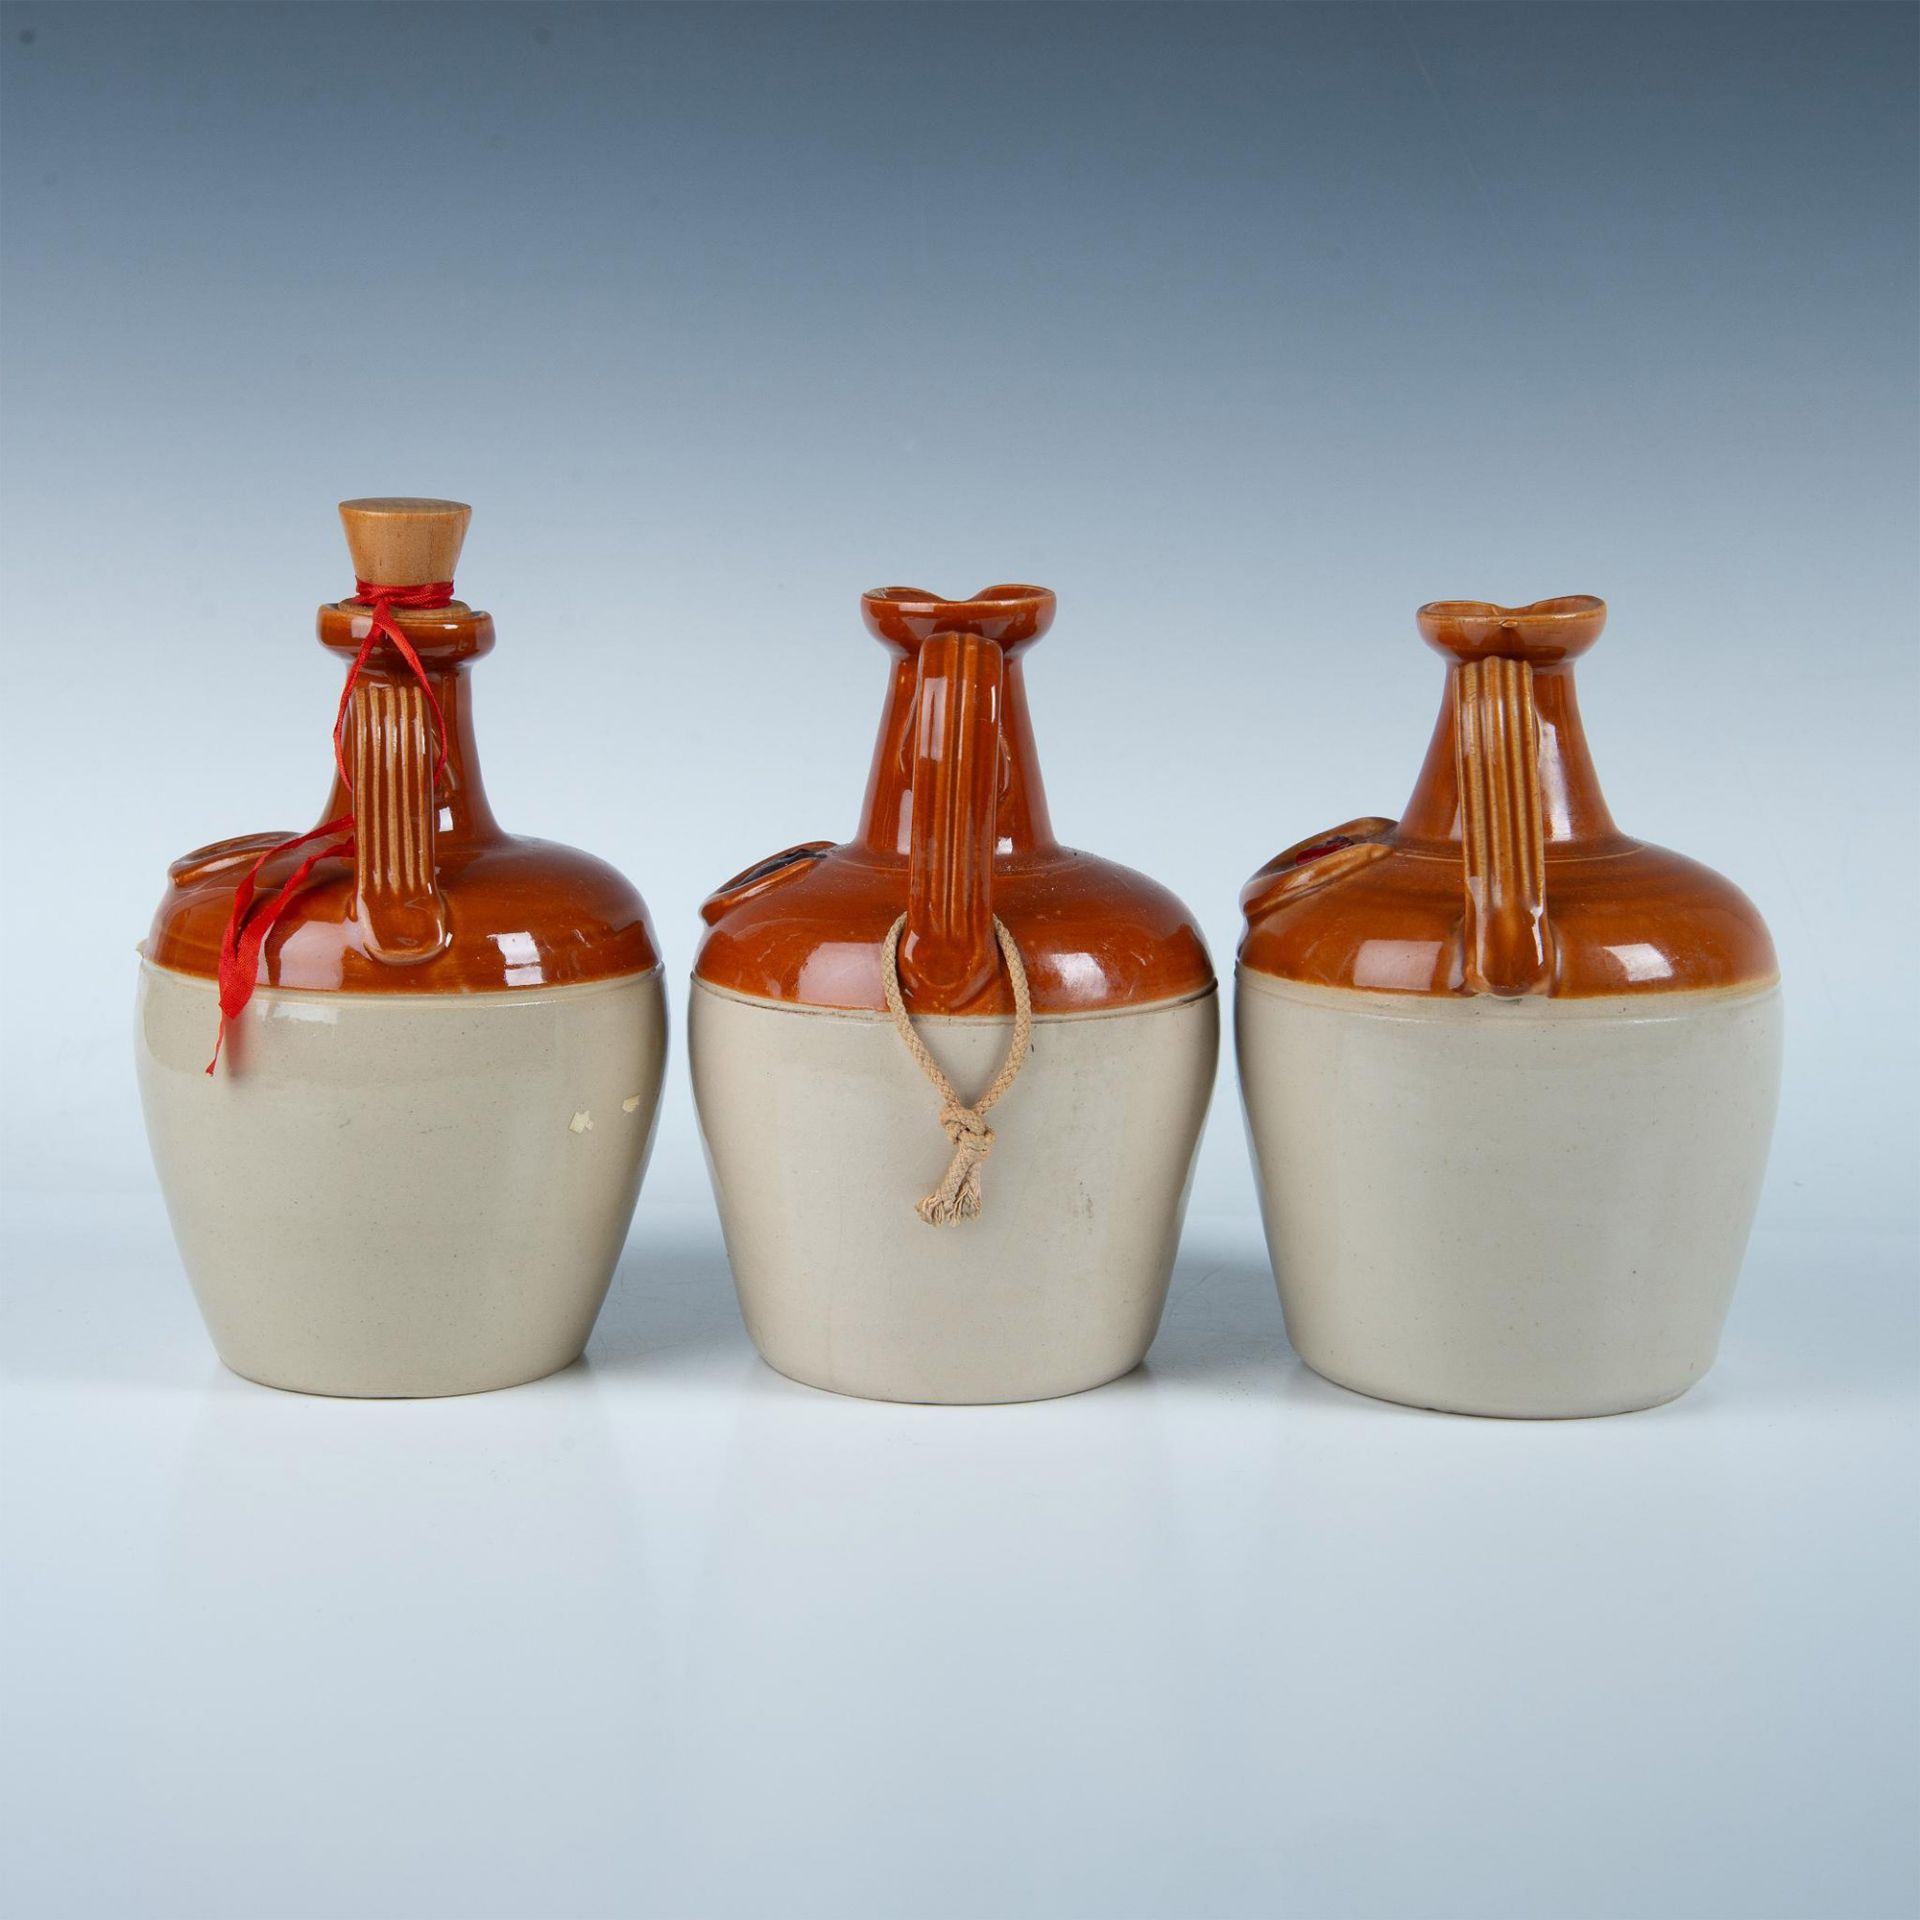 3pc Vintage Ceramic Whisky Jugs, Ye Monk's Whisky - Image 2 of 7